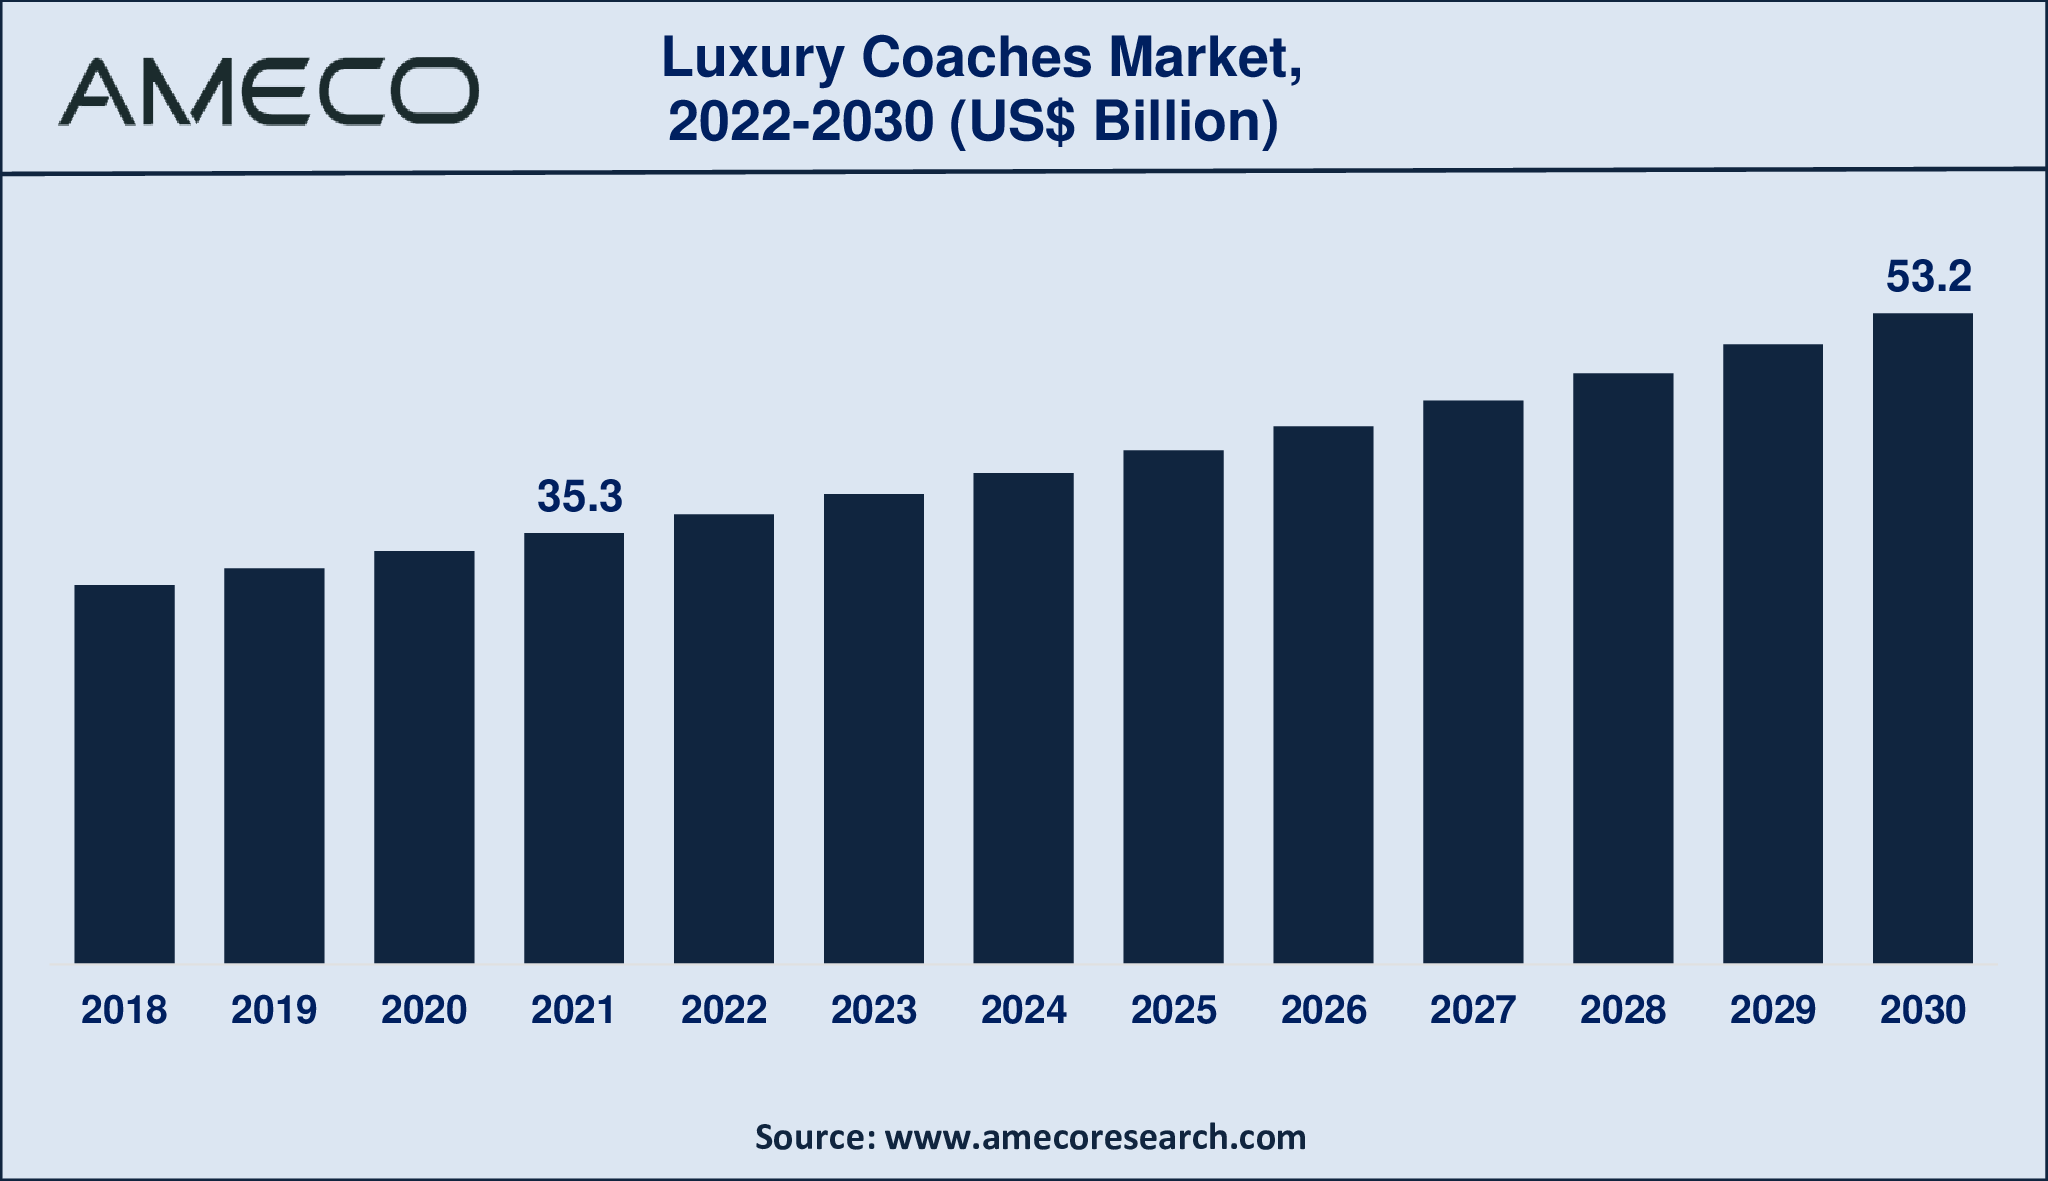 Luxury Coaches Market Size